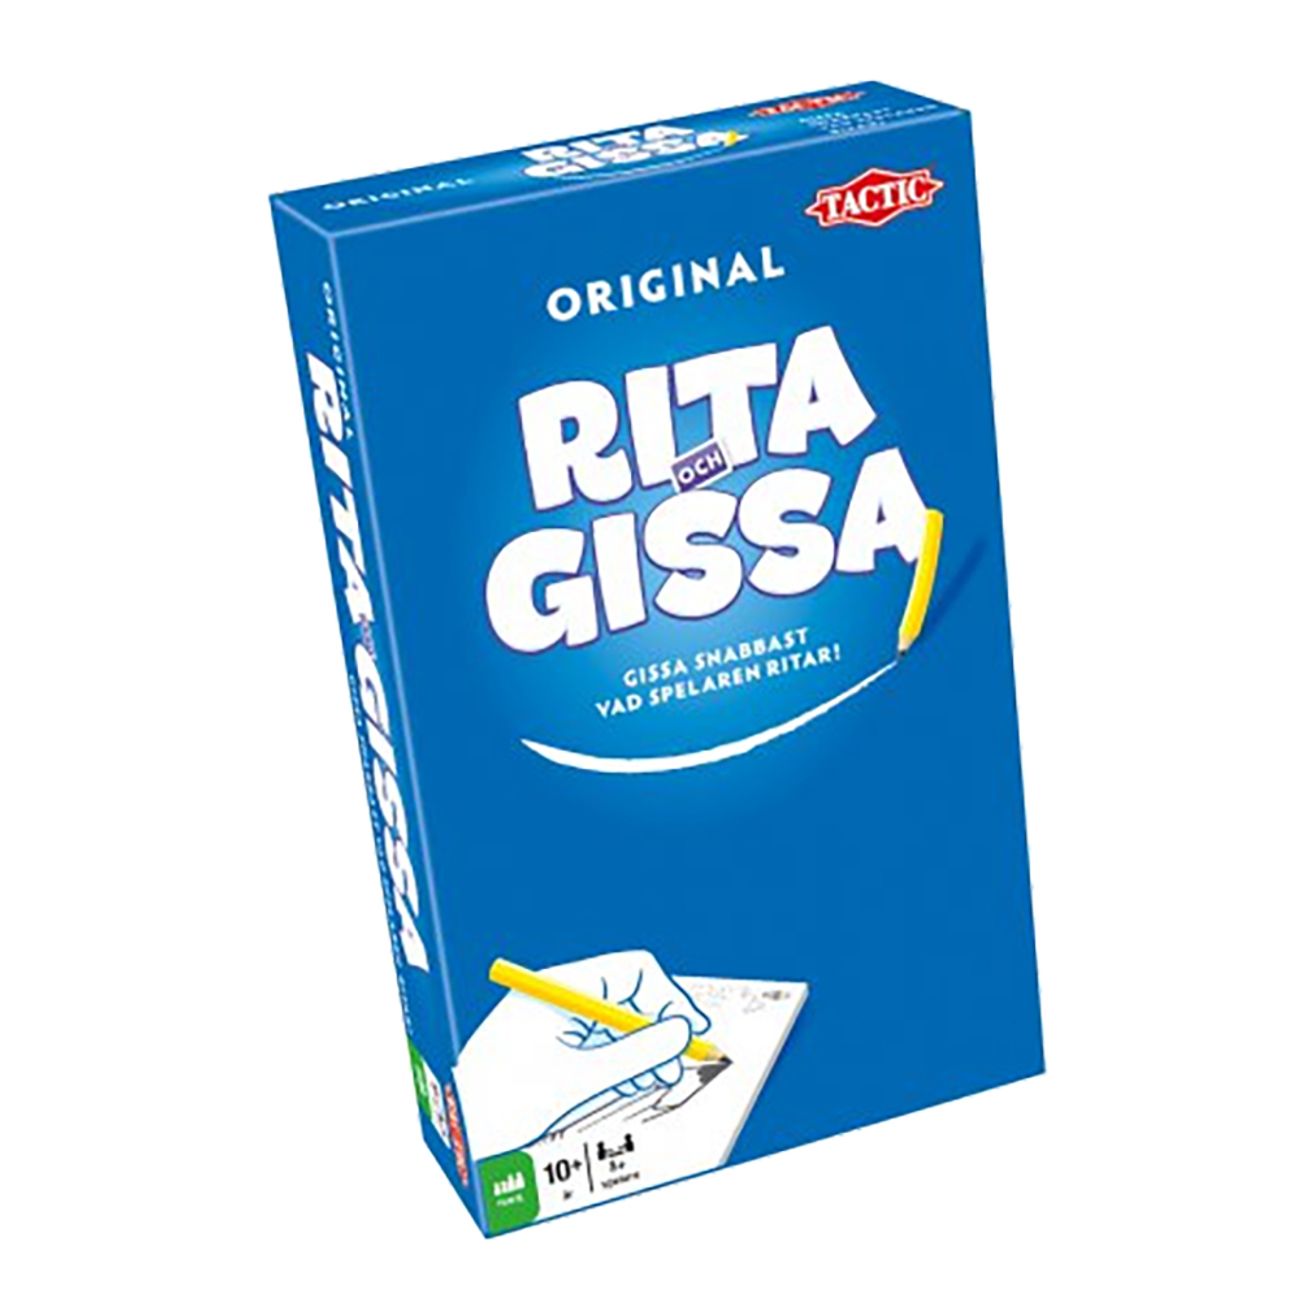 rita-gissa-resespel-81005-1